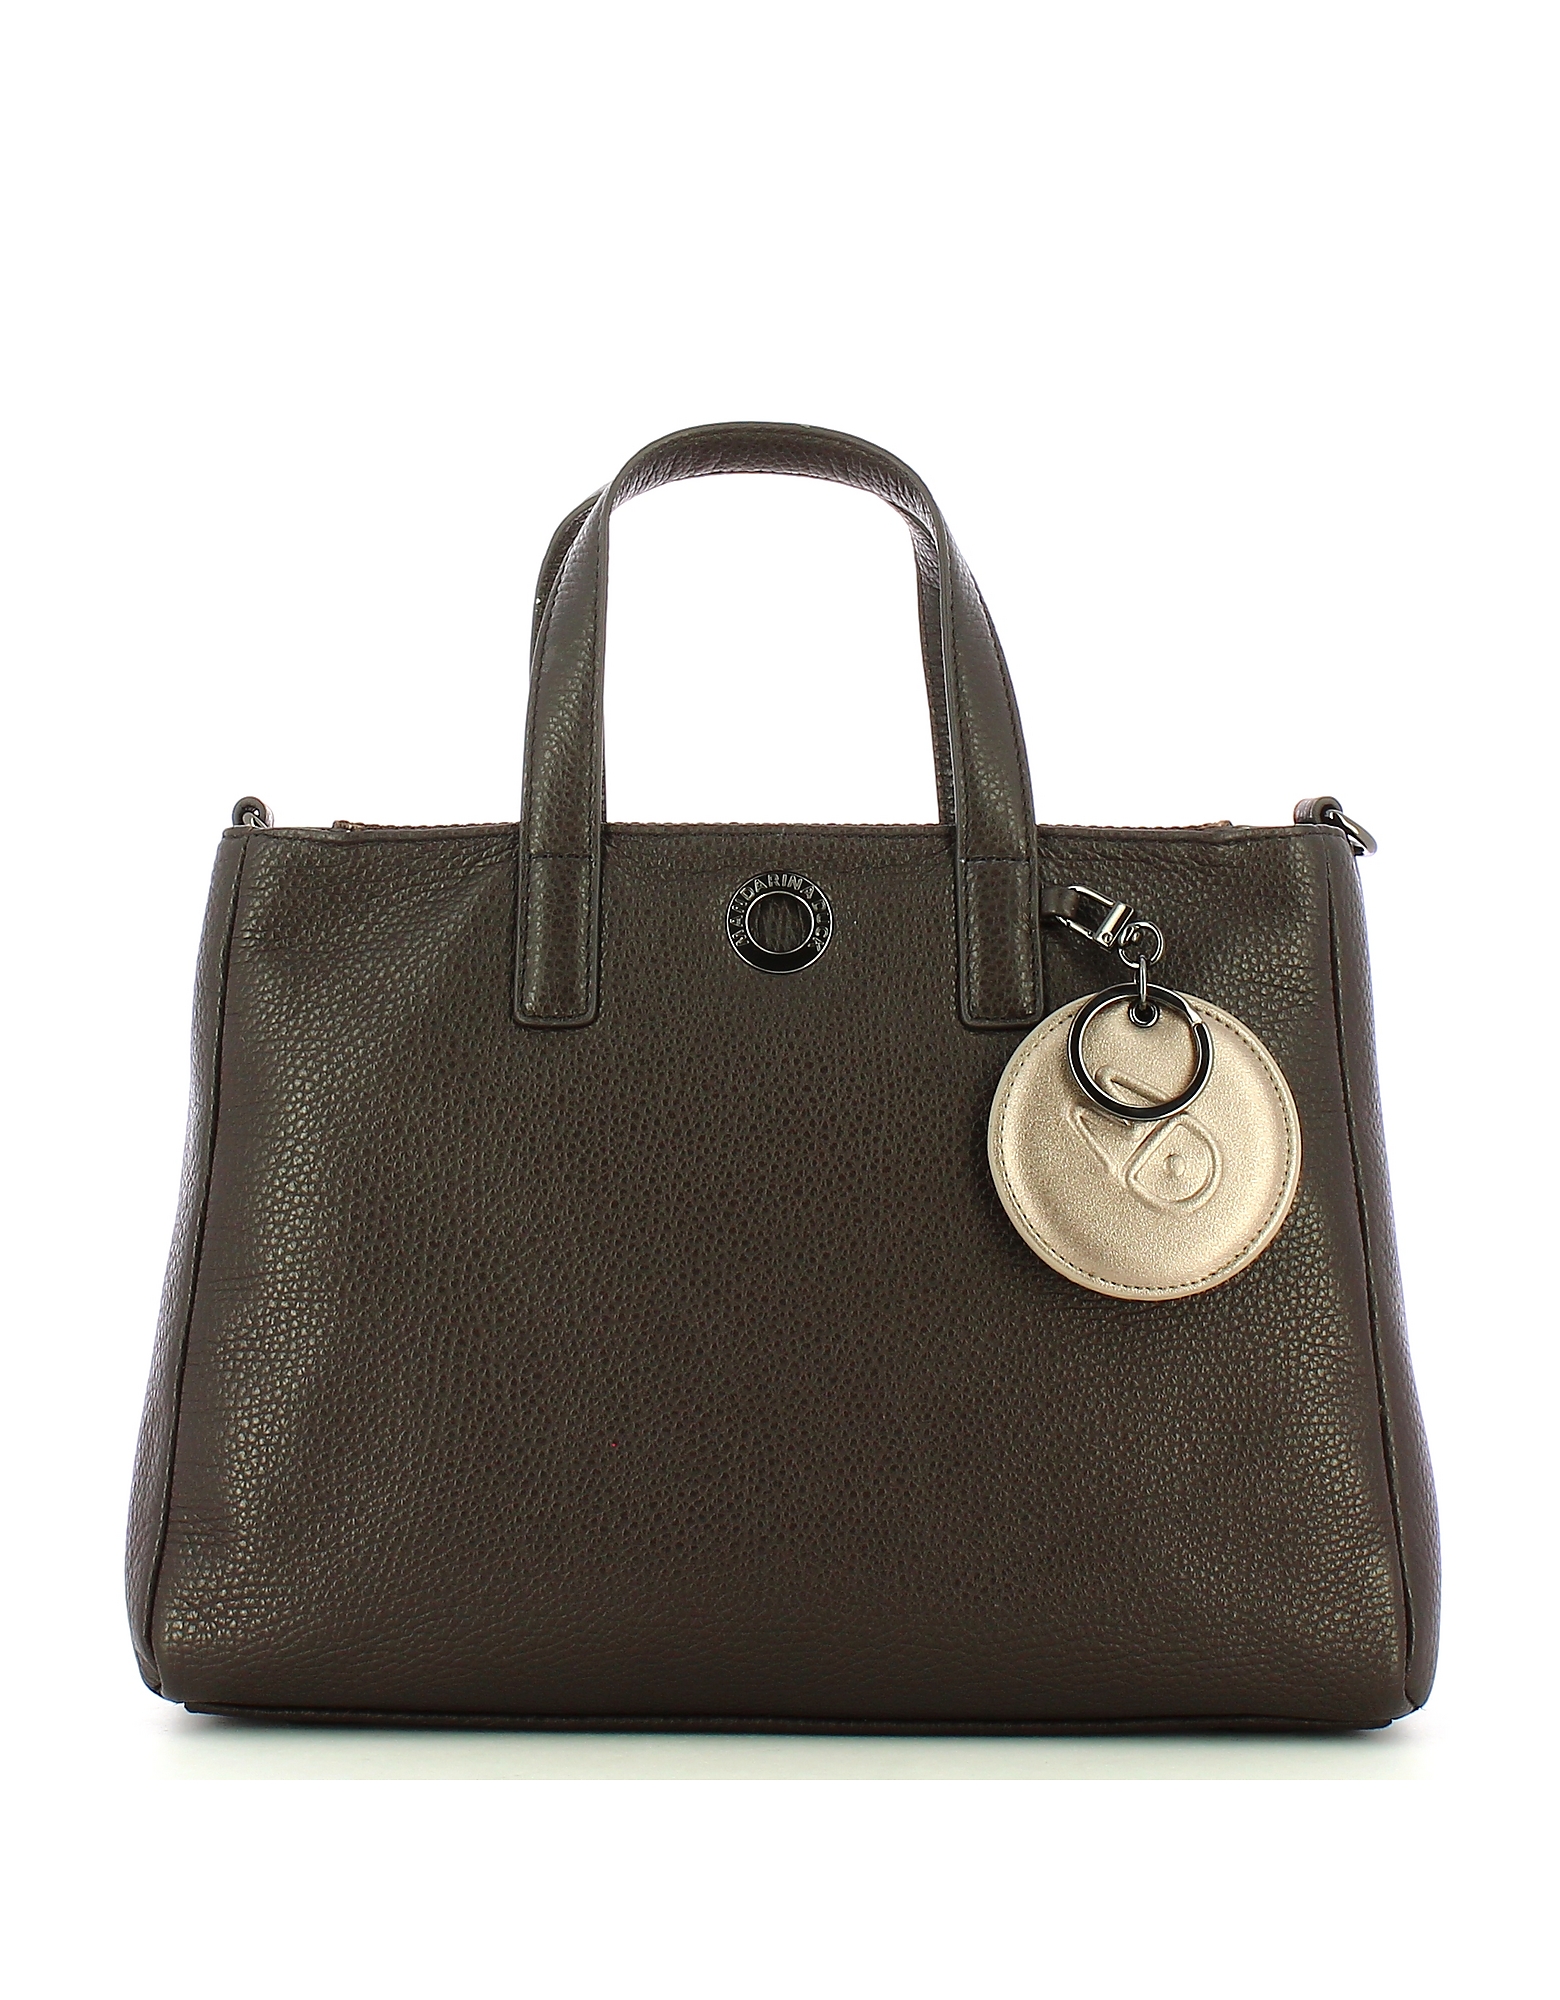 Mandarina Duck Designer Handbags Women's Bag In Brown